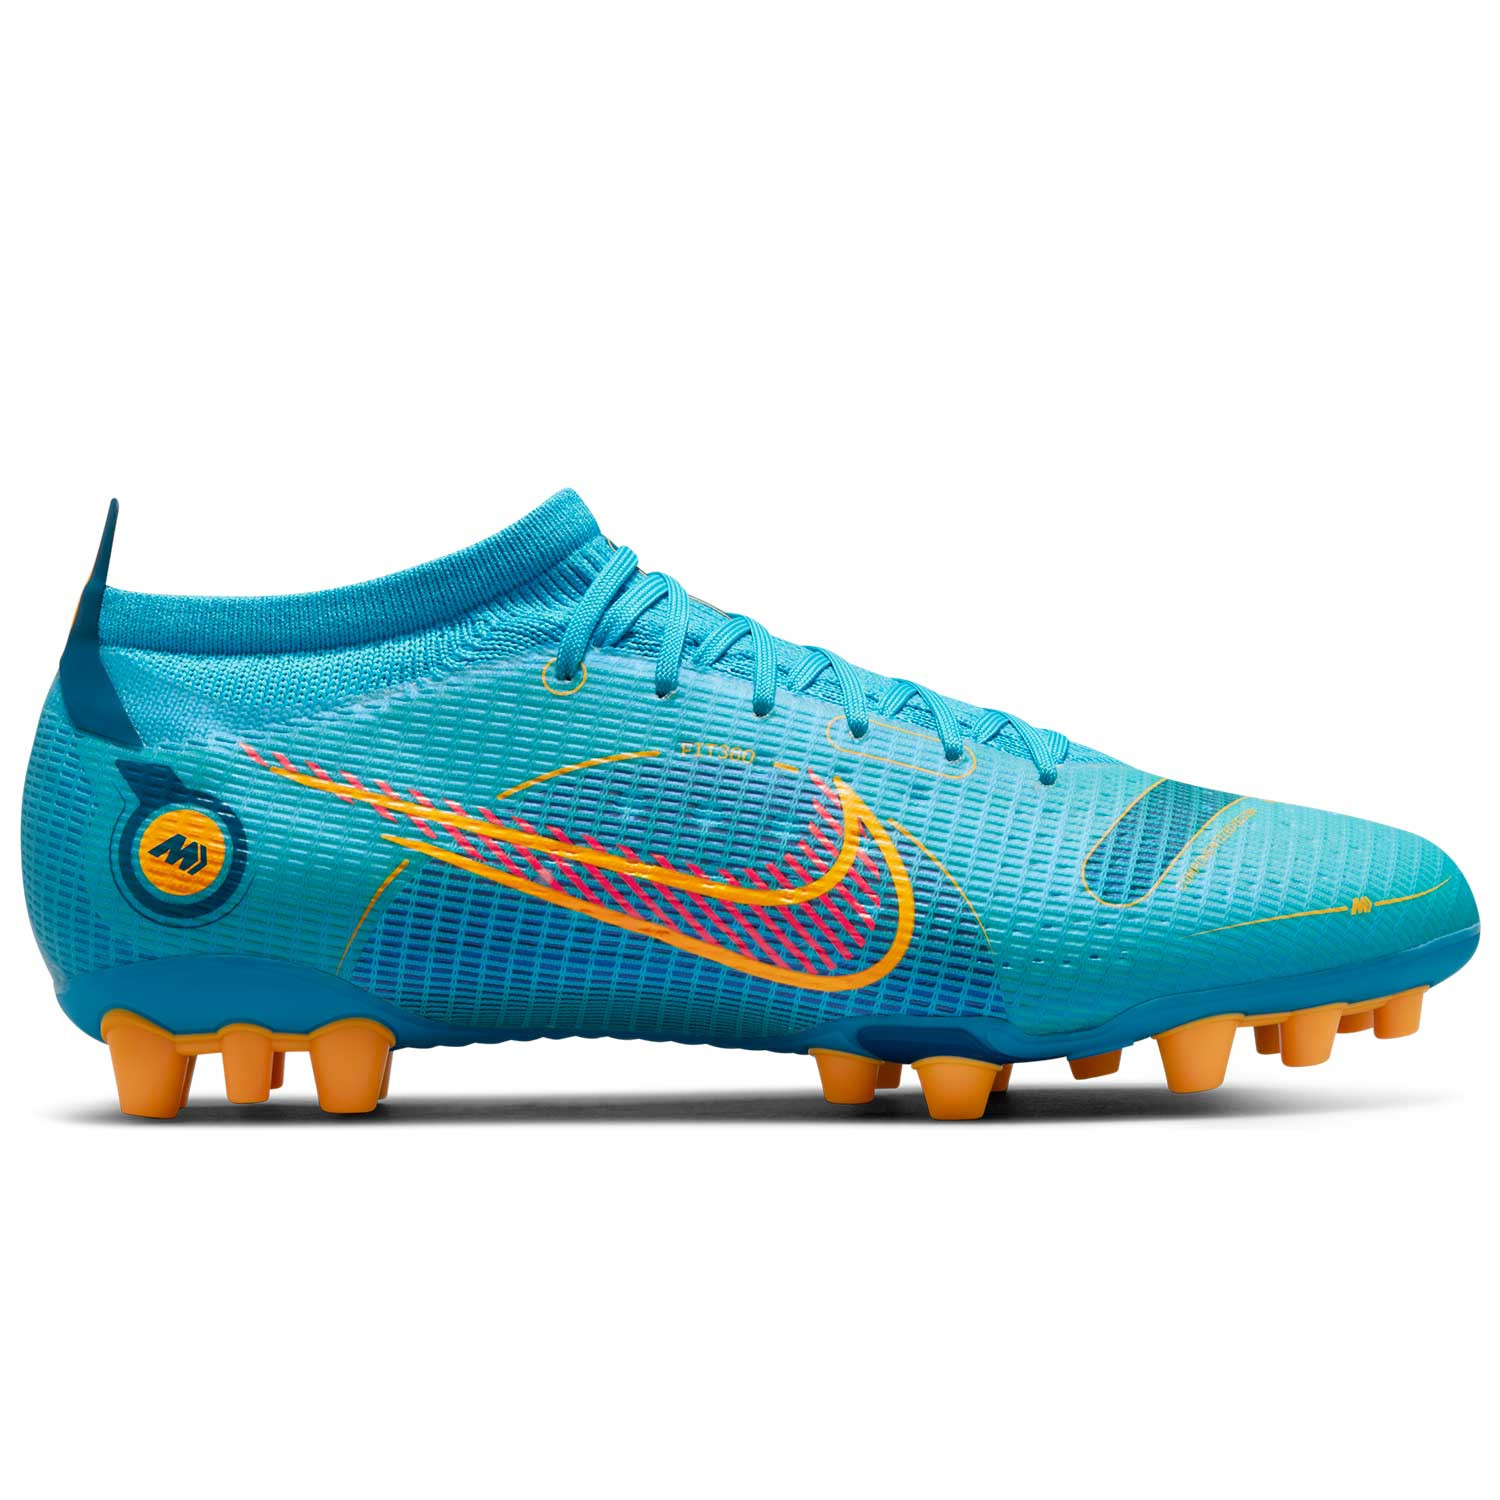 Botas de fútbol Nike Mercurial Vapor 14 AG azules